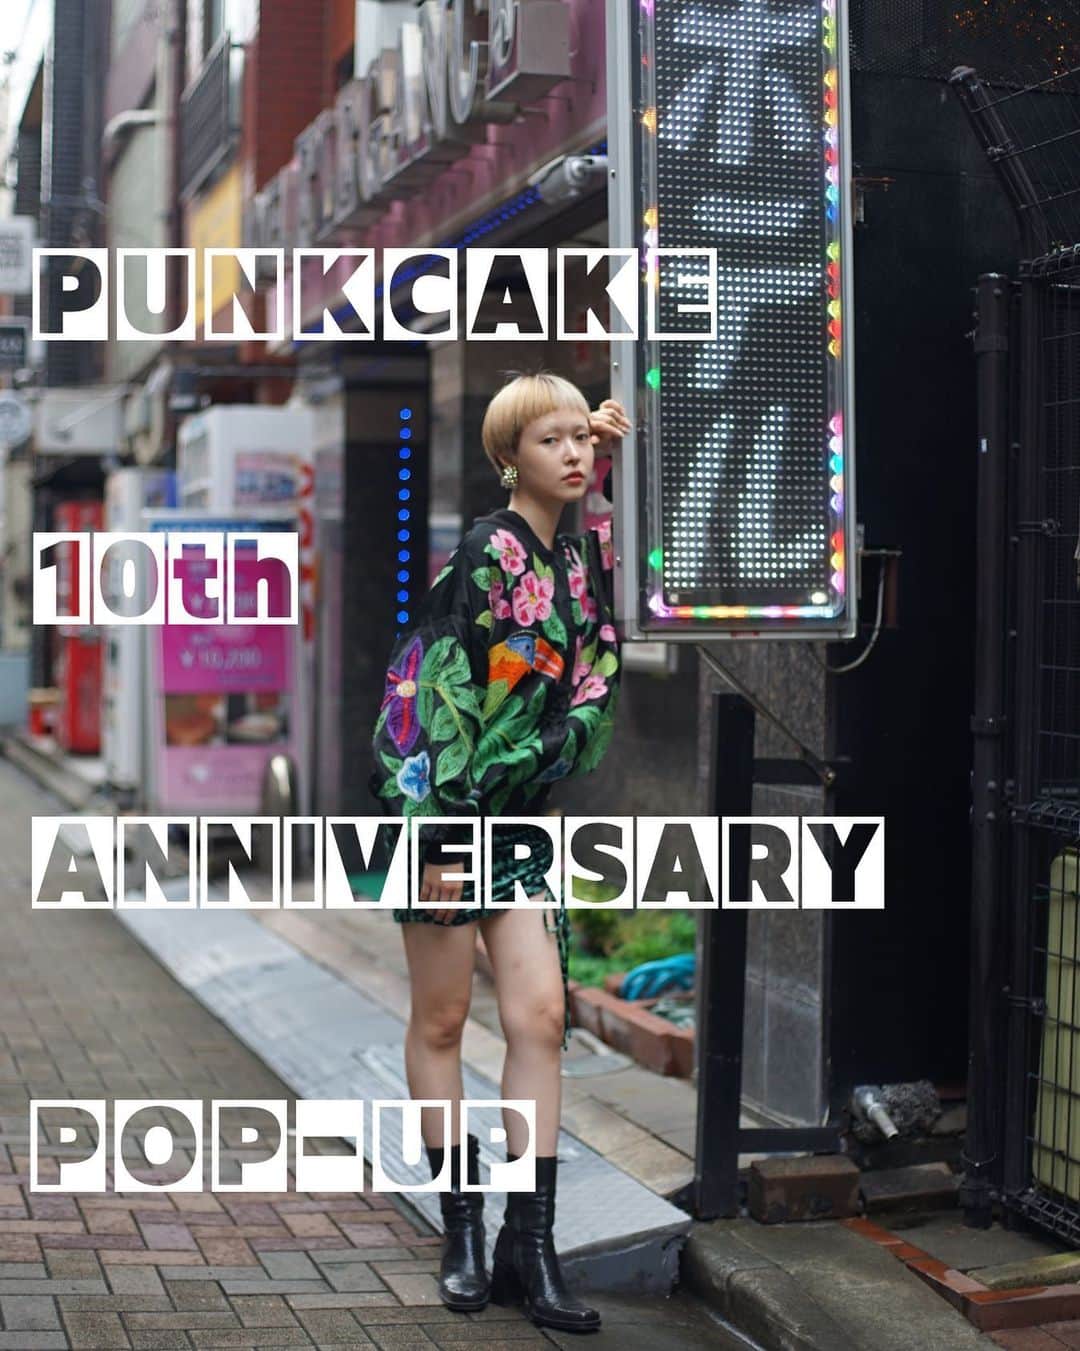 PUNK CAKEのインスタグラム：「🌹10th anniversary POP-UP🌹  本日からポップアップスタートです⭐️  今回ポップアップの最終日 10月1日でPUNK CAKEは10周年を迎えます！！！ パチパチパチパチ👏🏻👏🏻👏🏻👏🏻  昨年原宿のお店をクローズして早くも1年…。 場所も営業スタイルもガラッと変わって まだまだ色々と模索中ですが なんとかこの1年頑張って10年という大きな節目を迎えることができそうです！ 1年よりもっと昔の事のようにも思うけど やっぱりあの最後の原宿の日を思い出すセンチメンタルなこの頃です😭  クローズしてからまだポップアップに来れてない方も！ 初めてだけど行ってみたいなって方も！ 今月は特にみんなみんな大歓迎でお待ちしています！  大きな節目なのでイベント的に何かしようとも考えていましたが、結局時間が迫ってきて何も企画できなかったw  ですがラスト２日間の9/30,10/1は営業時間を延長して  「パンクケイク角打ちスタイル」  みたいなラフな感じで フードやドリンクも基本持ち込みOKで！ 特にパーティーといった感じでもなく来てくれたみんなで飲みながらお話しして過ごせたらいいなと考えています🍺  是非一緒に乾杯しましょう♡ もちろん普通に営業もしてますのでお買い物だけでも、 初めての方も、挨拶だけでも、ご来店大歓迎です🌹 （お祝いなど本当に気を使わずに手ぶらで来てください！来てくださるだけで嬉しいです！）  それでは皆さまにお会いできる時を心よりお待ちしています🥰  Kinjy   ※オンラインショップ掲載商品をポップアップで直接見たいお客様はinstagramのDMなどで事前にご連絡ください。  日程/ 9/23(土)～10/1(日) 時間/ 13:00～20:00        （9/30,10/1は14:00~22:00くらい） 場所/ 東京都目黒区鷹番3-4-10 2F   Model / @morioka_no_momooka  Photo / @kinjy_eat_world」